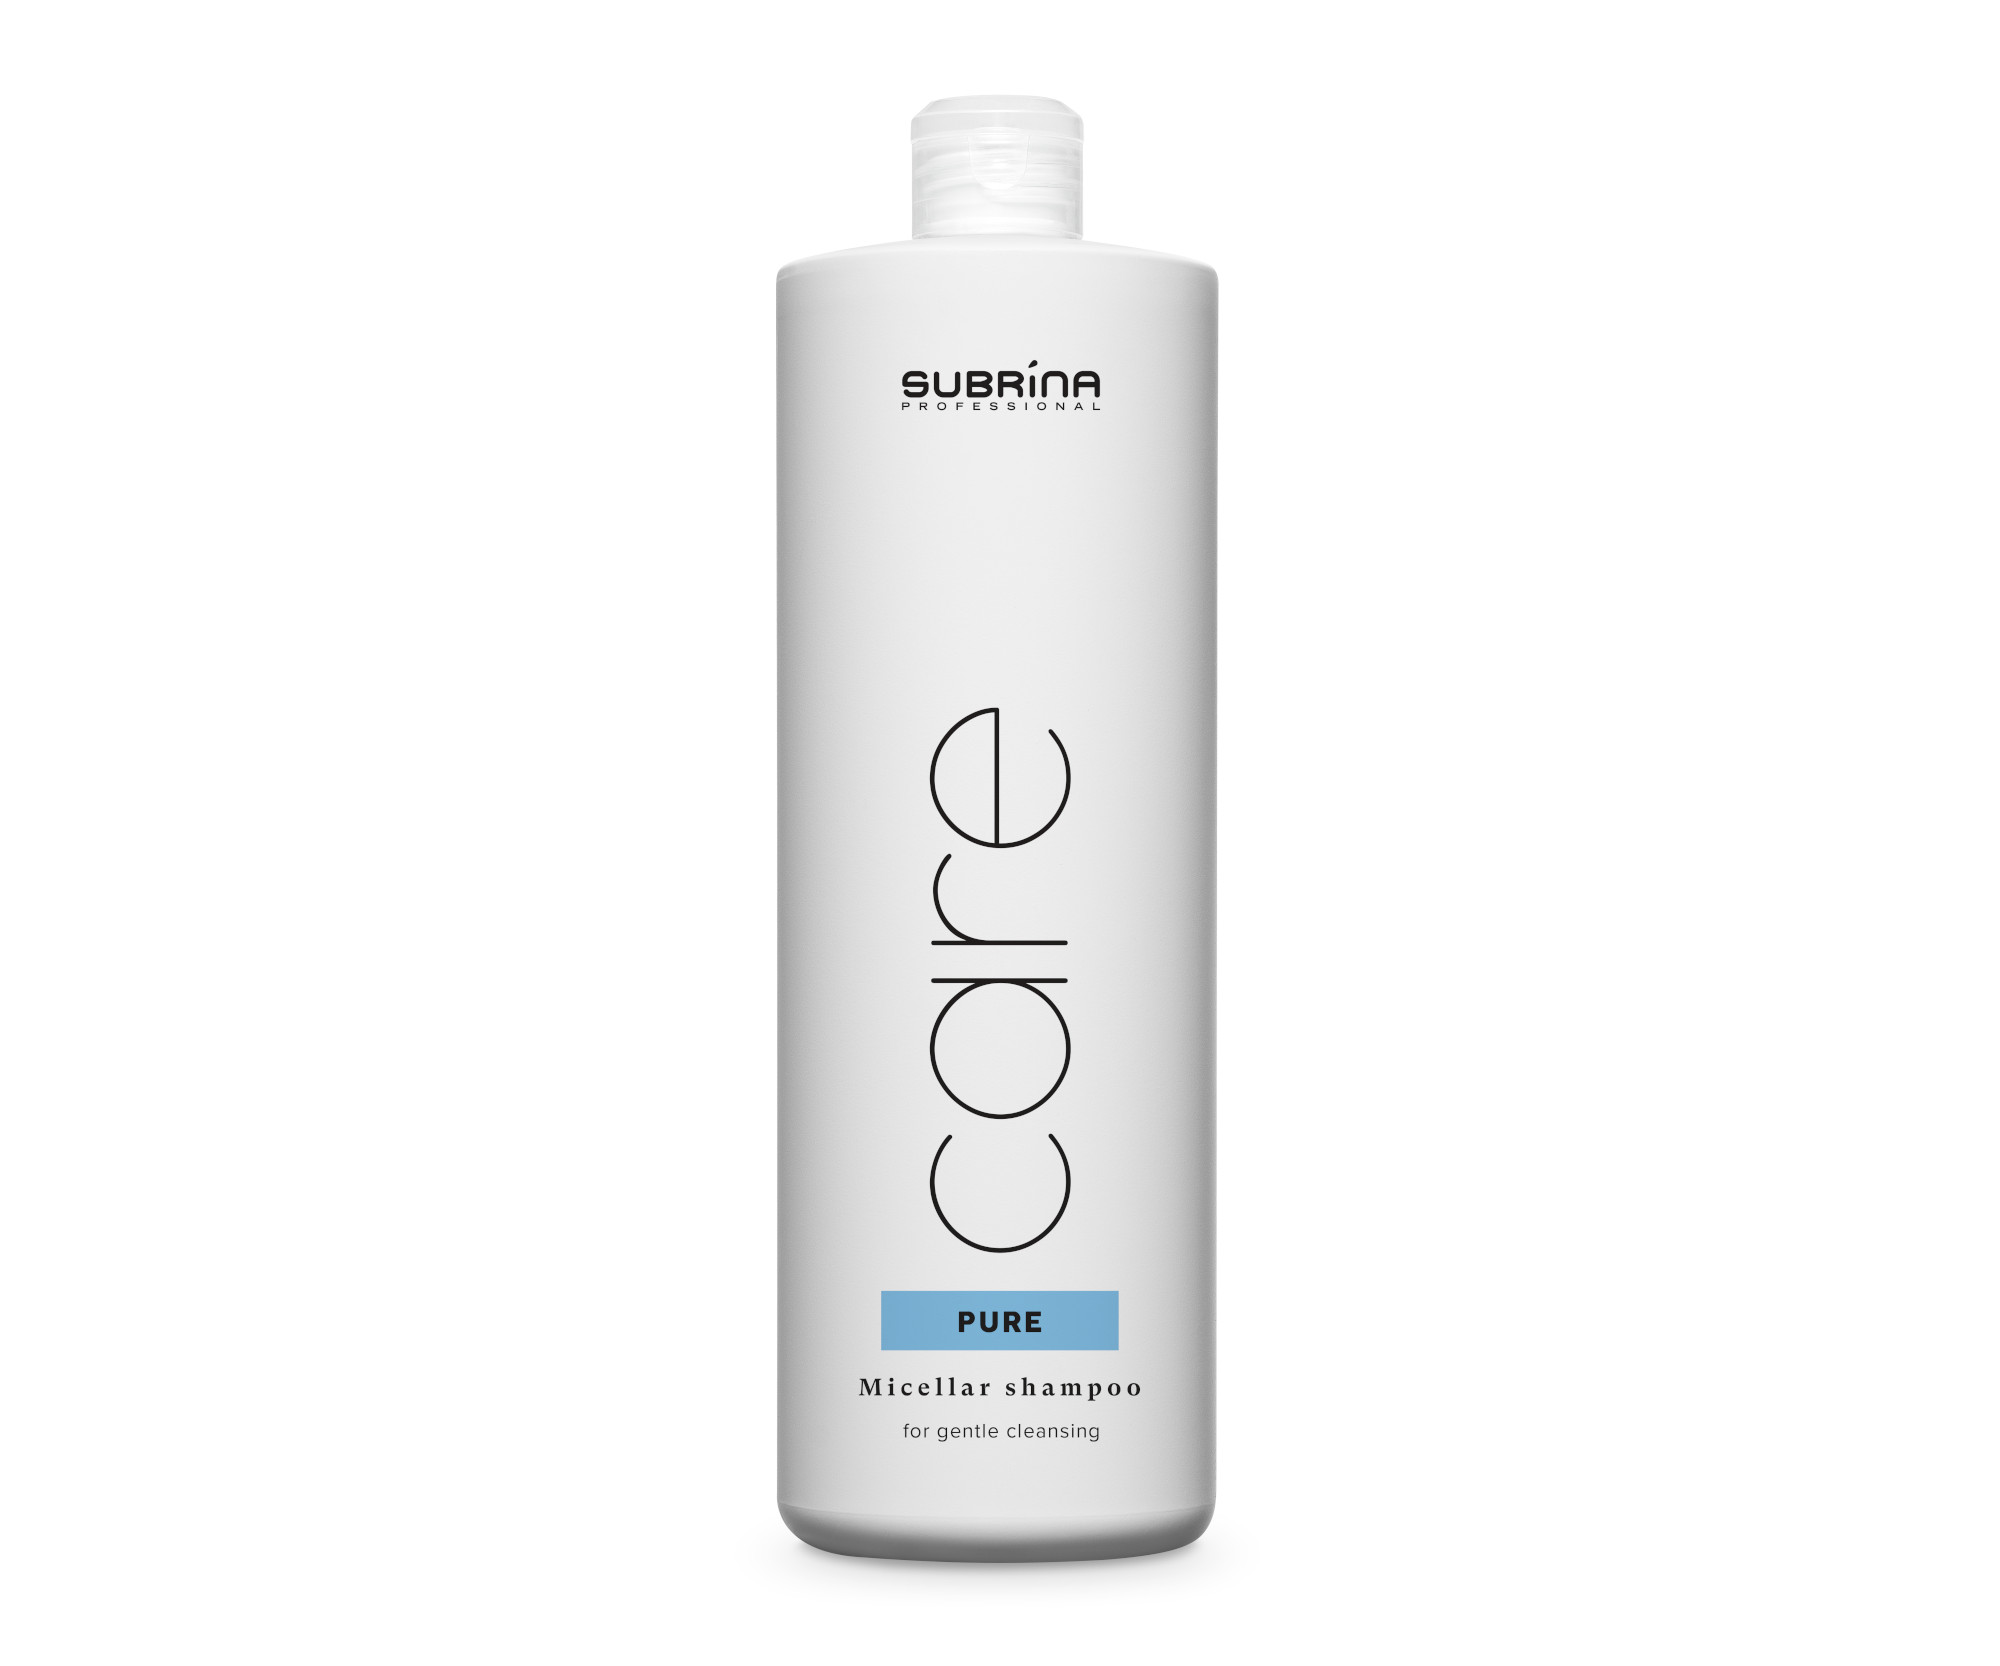 Objemový micelární šampon Subrina Professional Care Pure Micellar Shampoo - 1000 ml (060284) + DÁREK ZDARMA